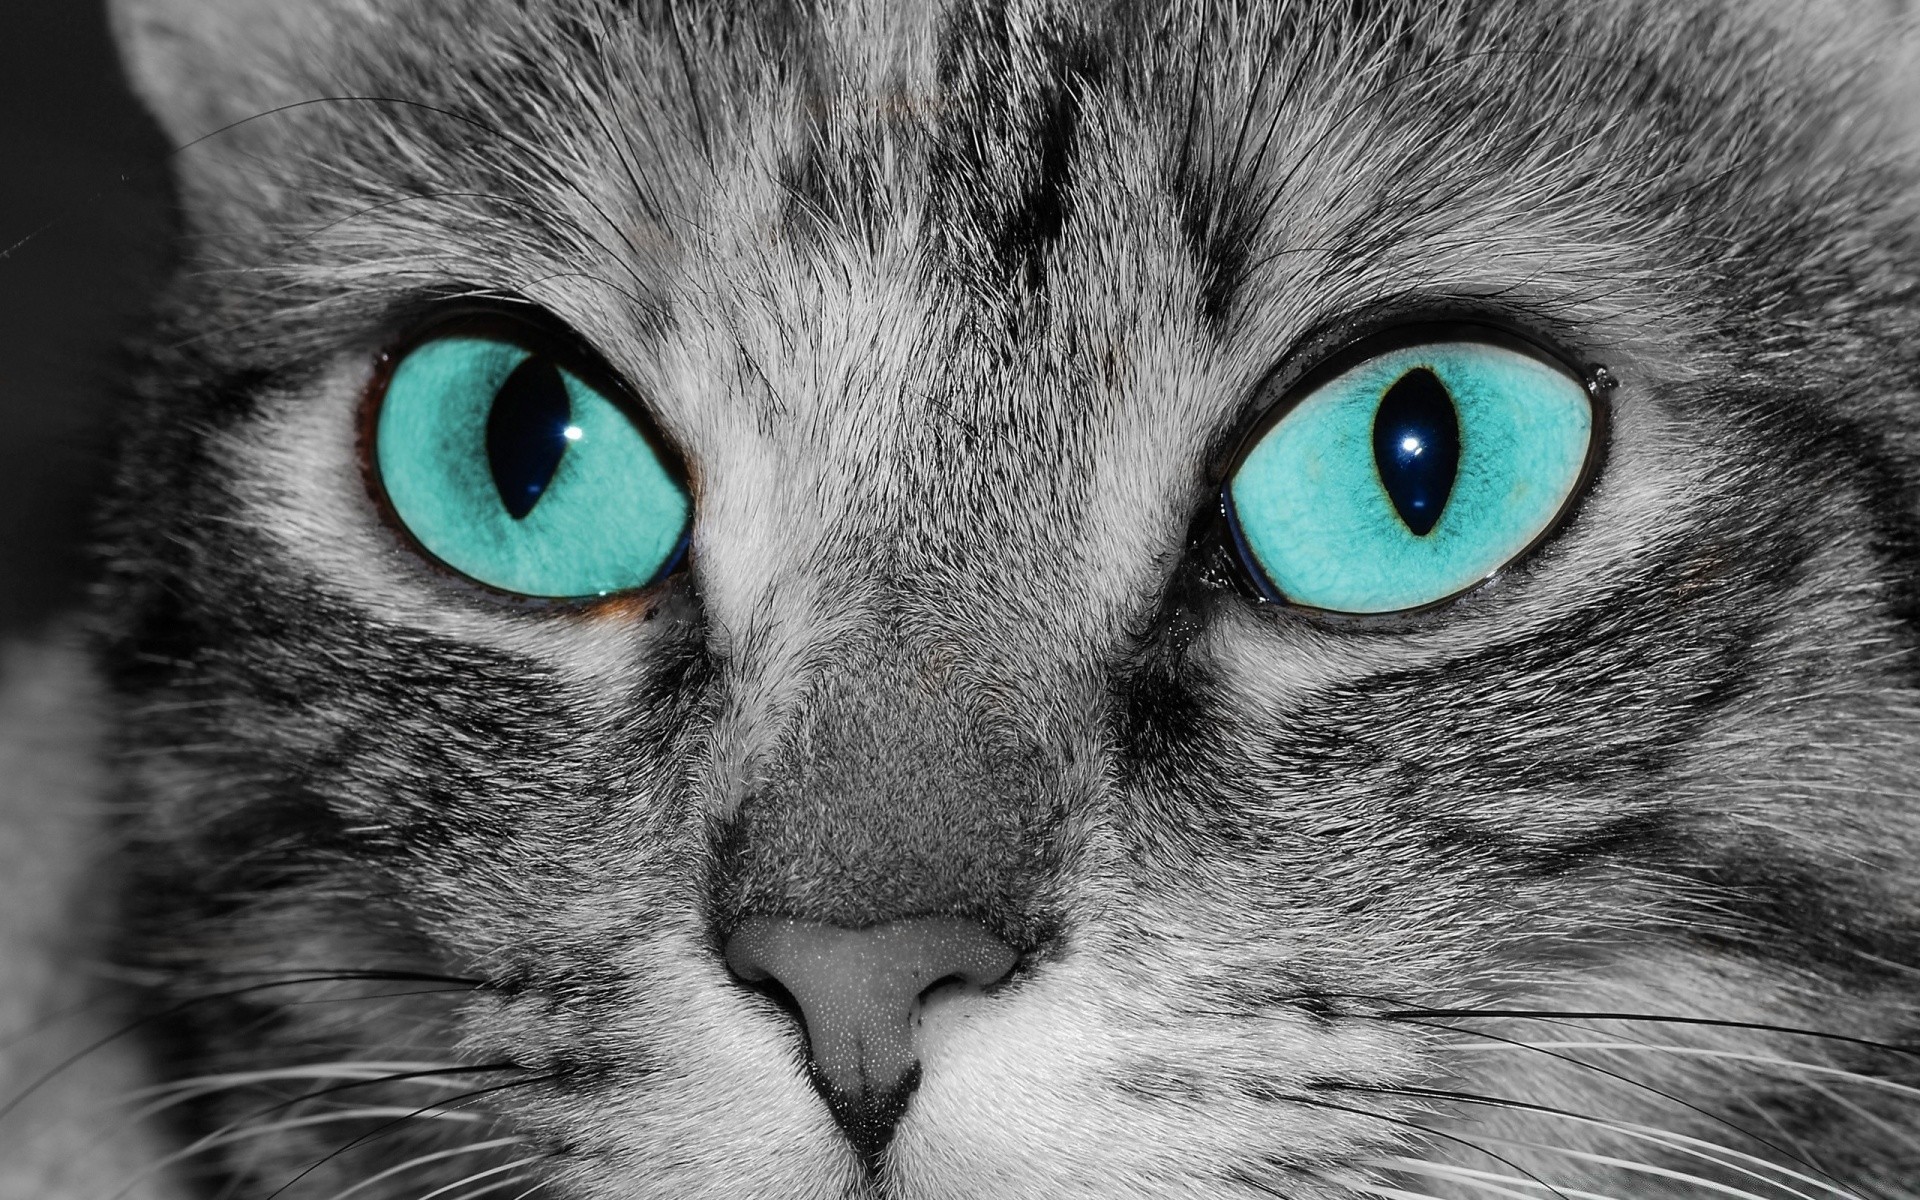 кошки кошка глаз пэт котенок животное милые мех портрет ус пуховый отечественные млекопитающее табби серый глядя пушистый нос молодой просмотр мало